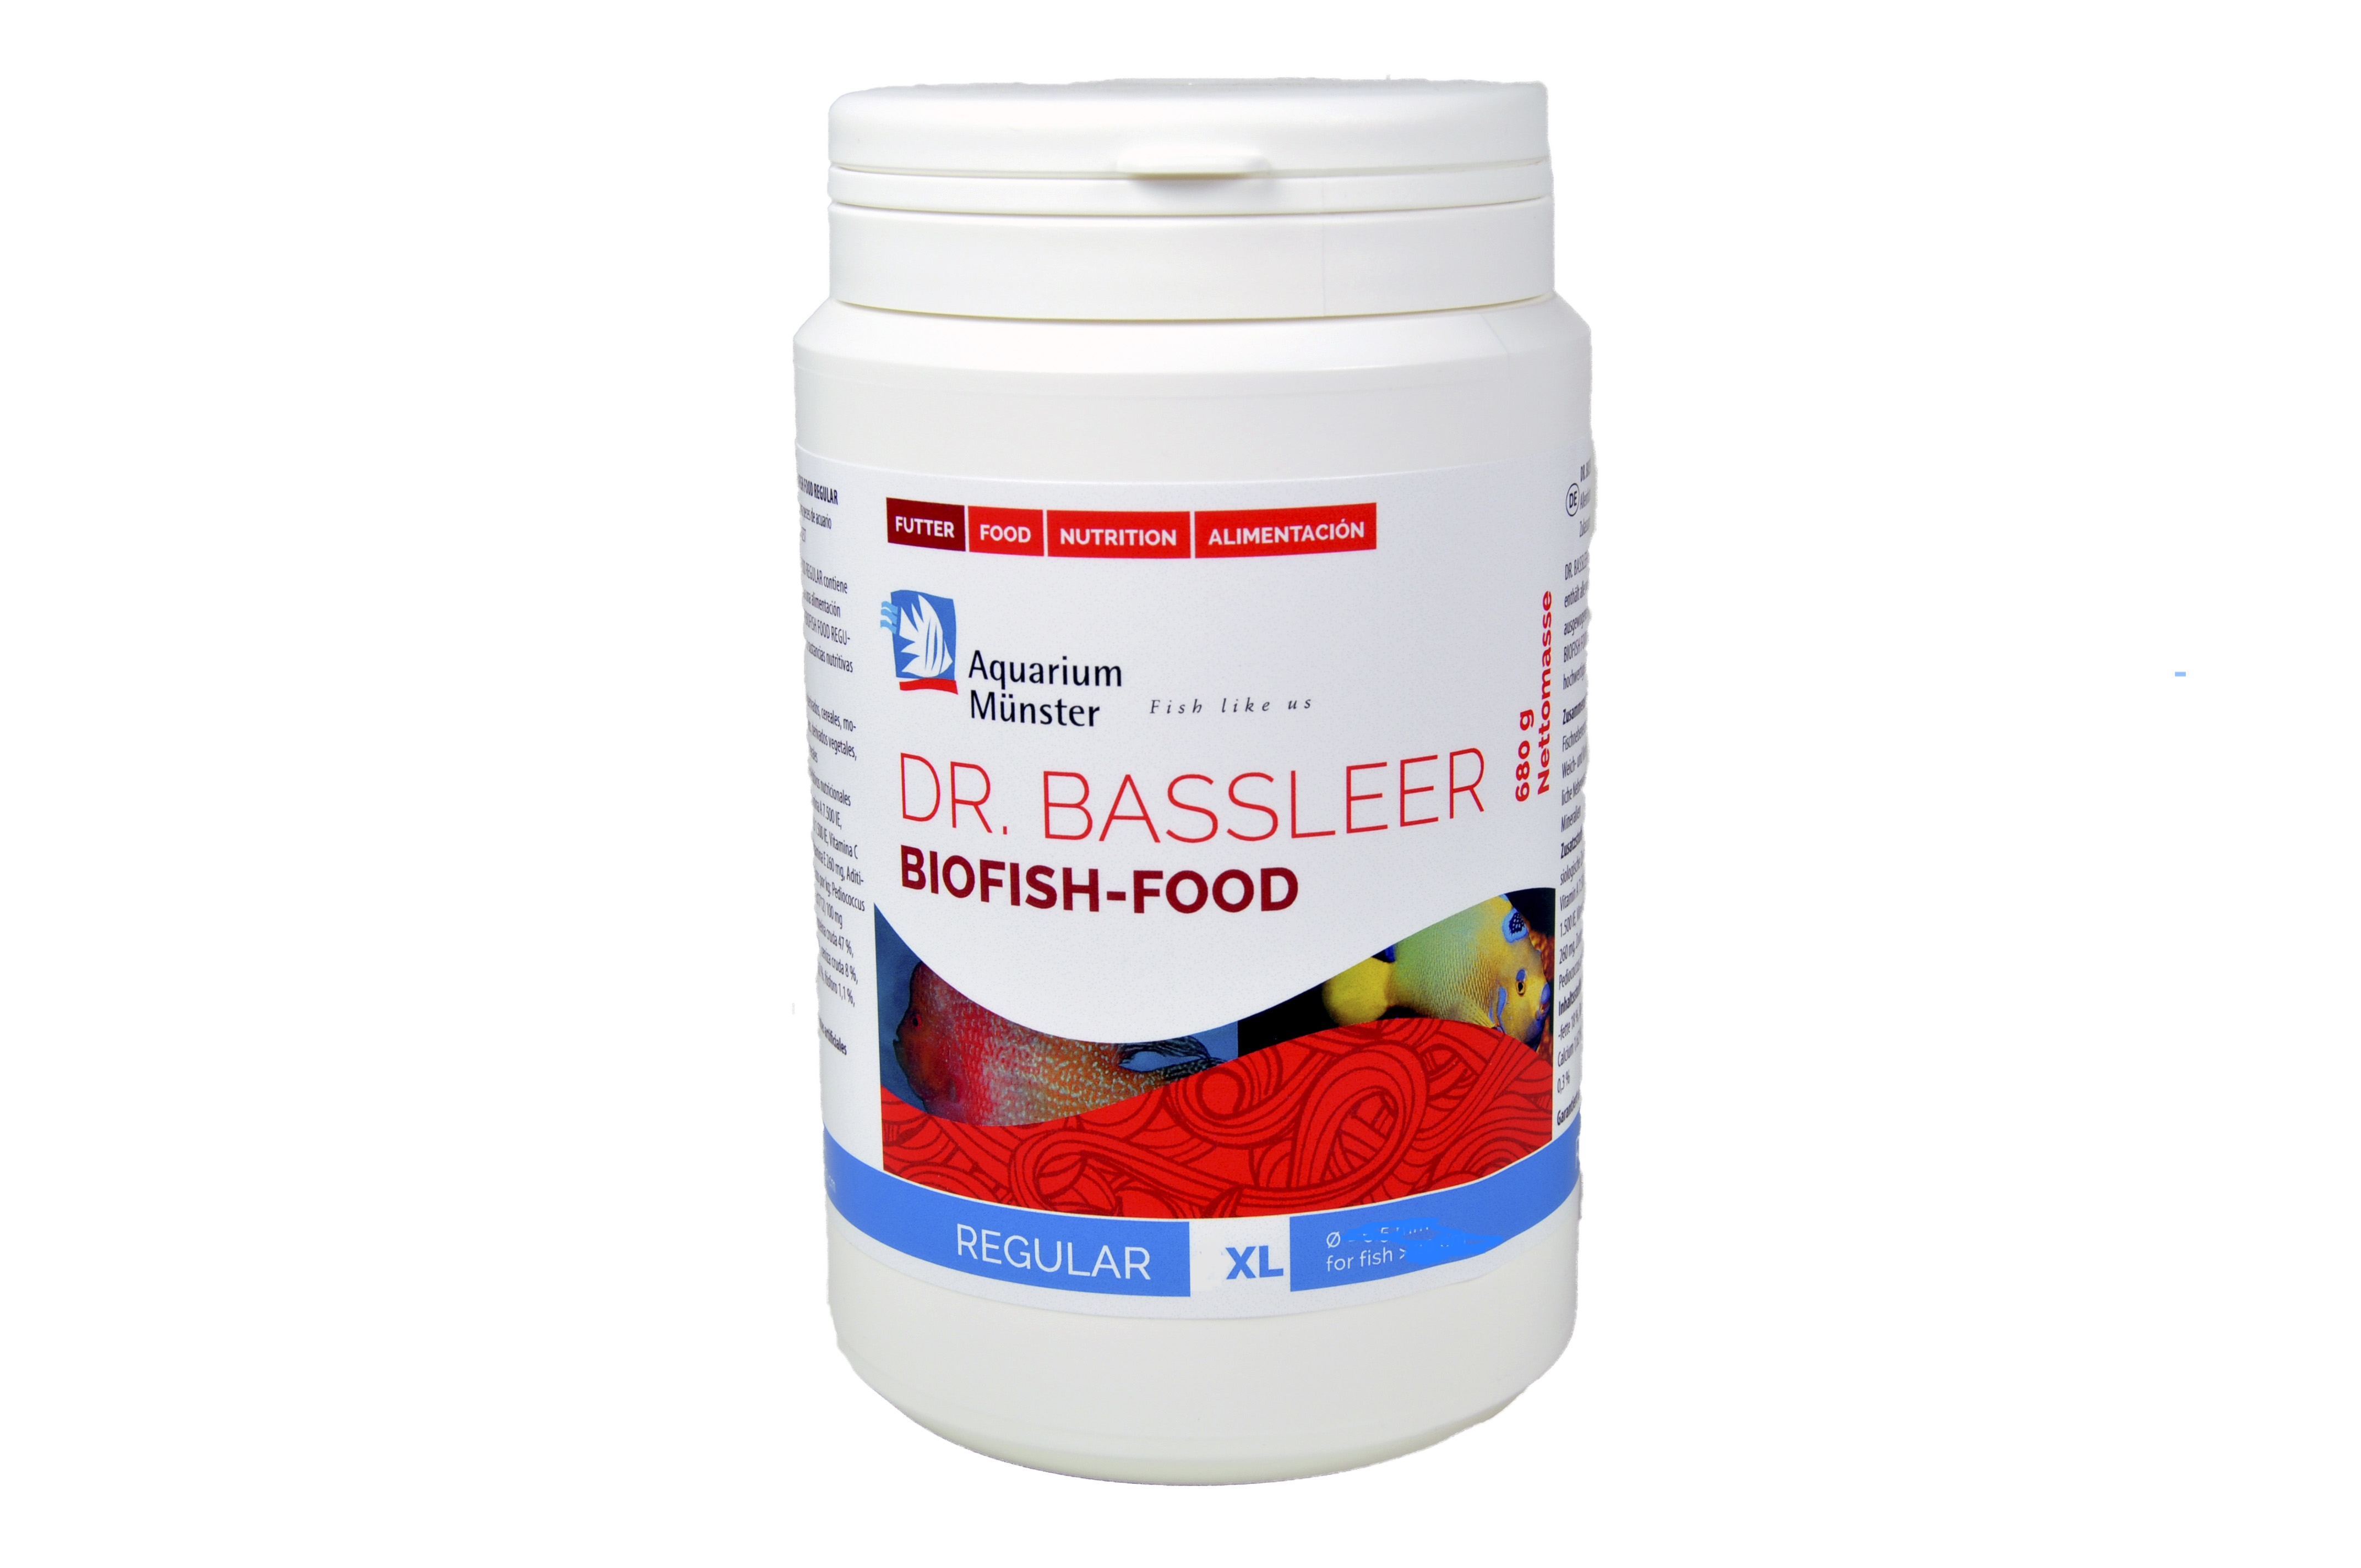 DR. BASSLEER BF REGULAR XL 680 g